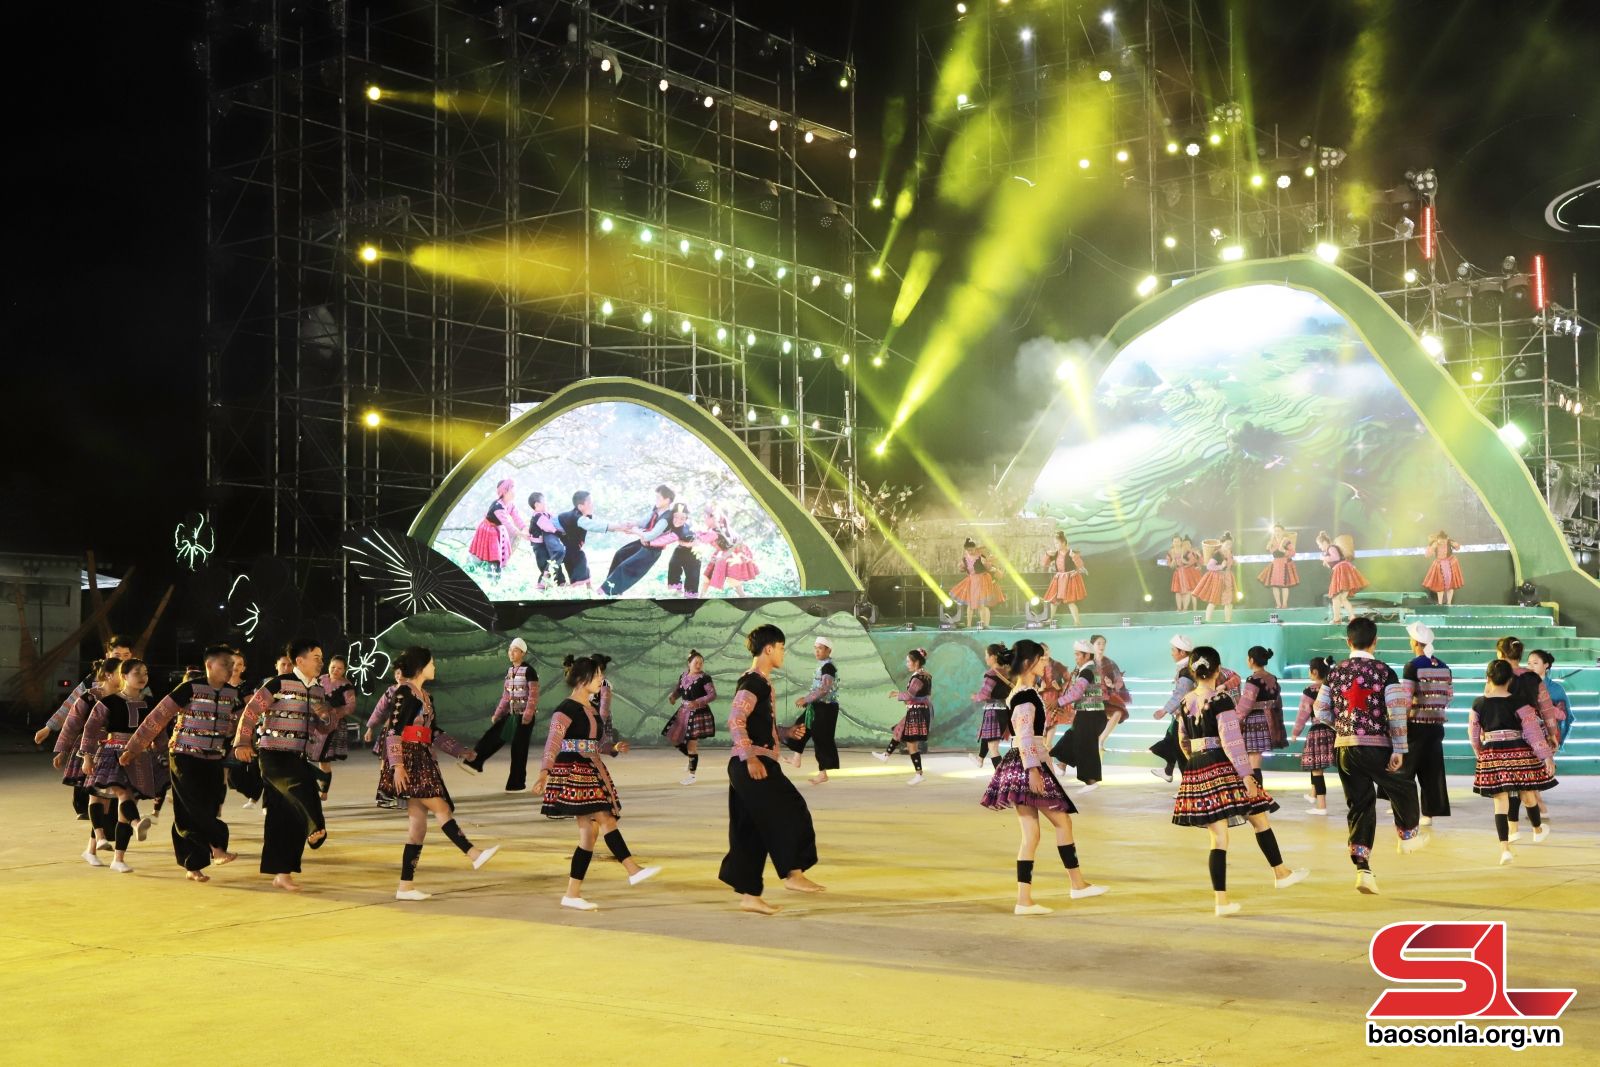 Điệu nhảy Tha Kềnh của đồng bào dân tộc Mông. 

